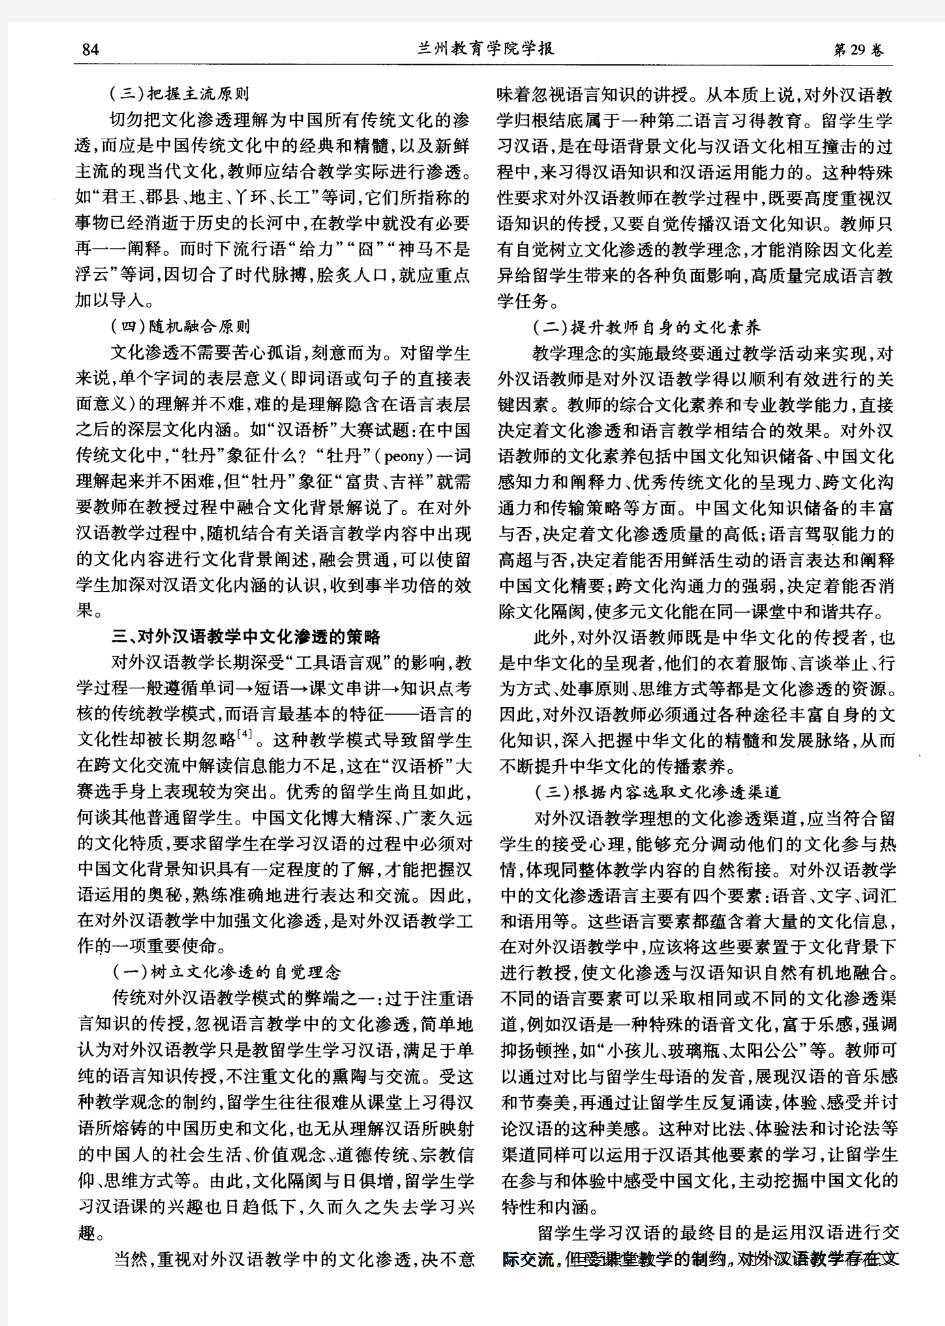 对外汉语教学中的文化渗透——“汉语桥”在华留学生大赛文化试题引发的思考